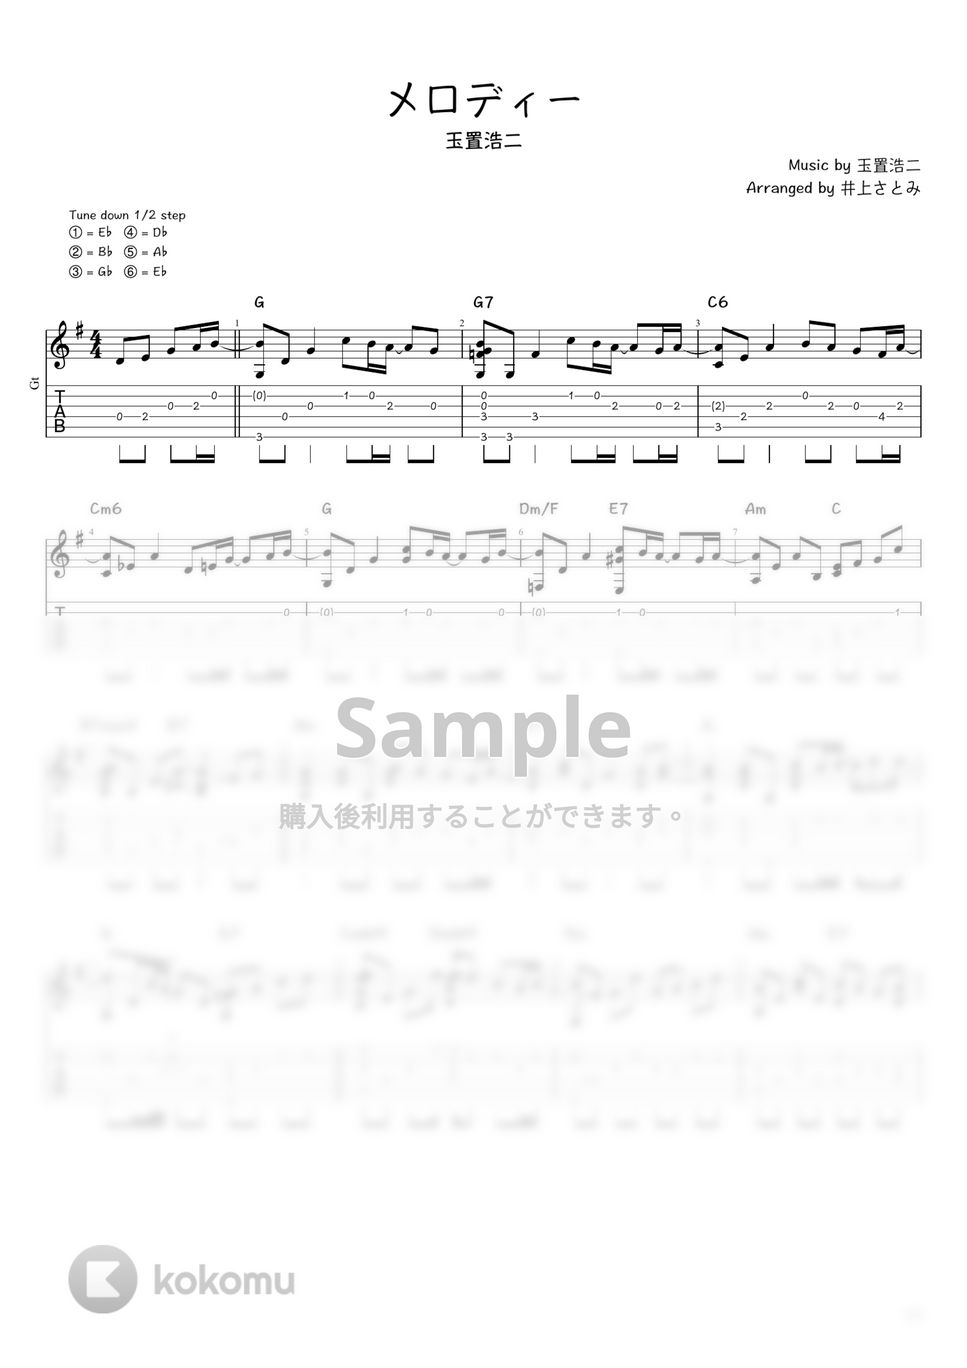 玉置浩二 - メロディー (ソロギター / タブ譜) by 井上さとみ